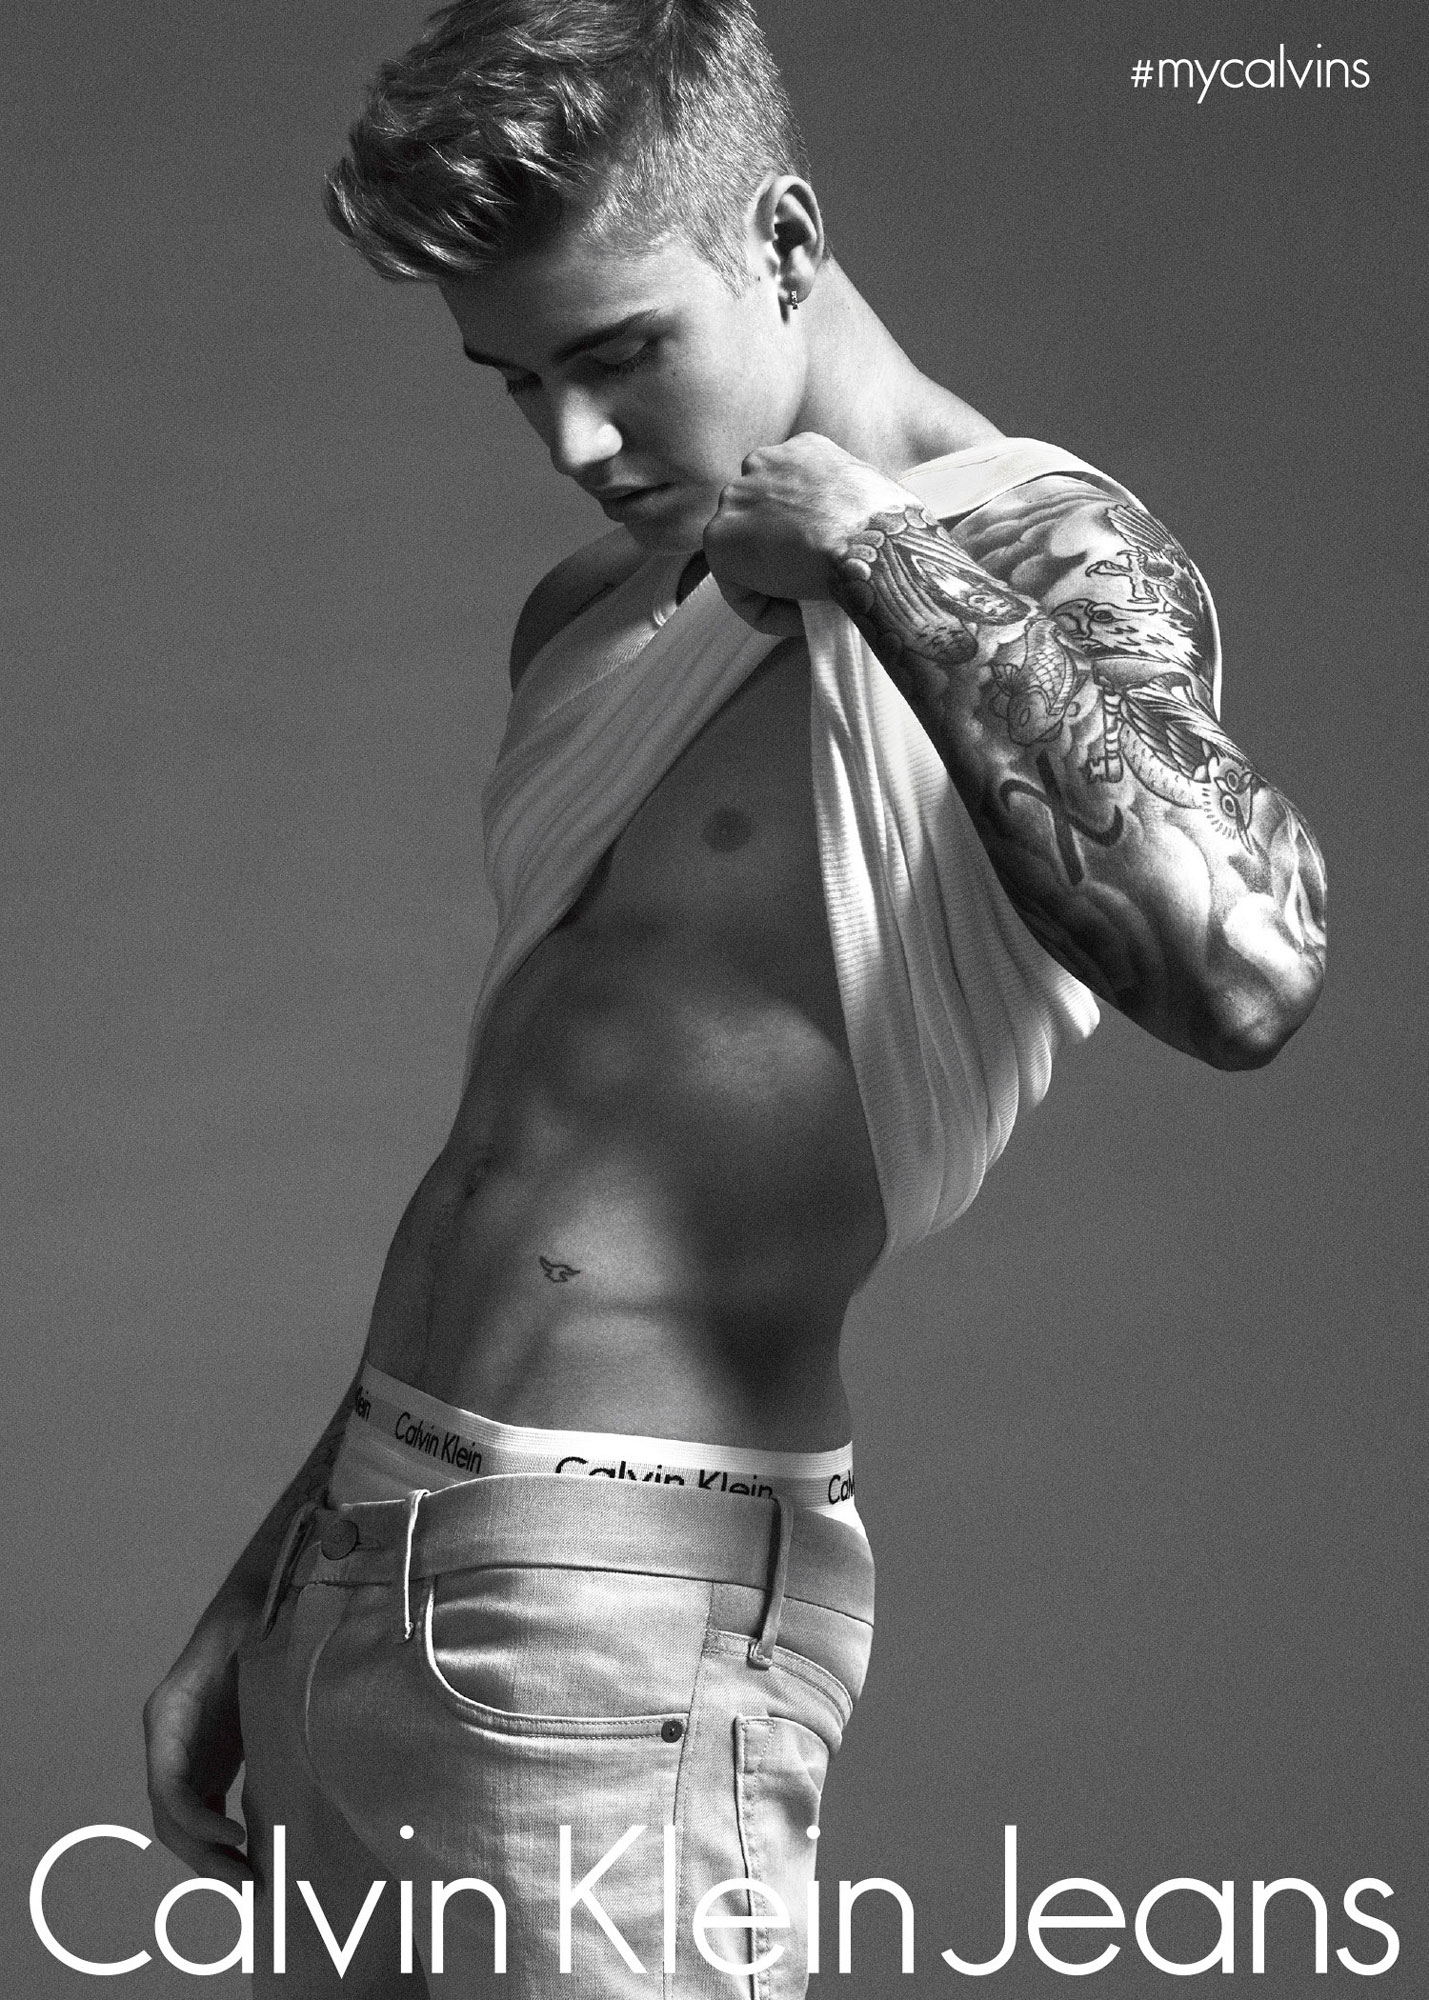 Justin Bieber là gương mặt đại diện mới của Calvin Klein cho chiến dịch  #mycalvins Spring 2015